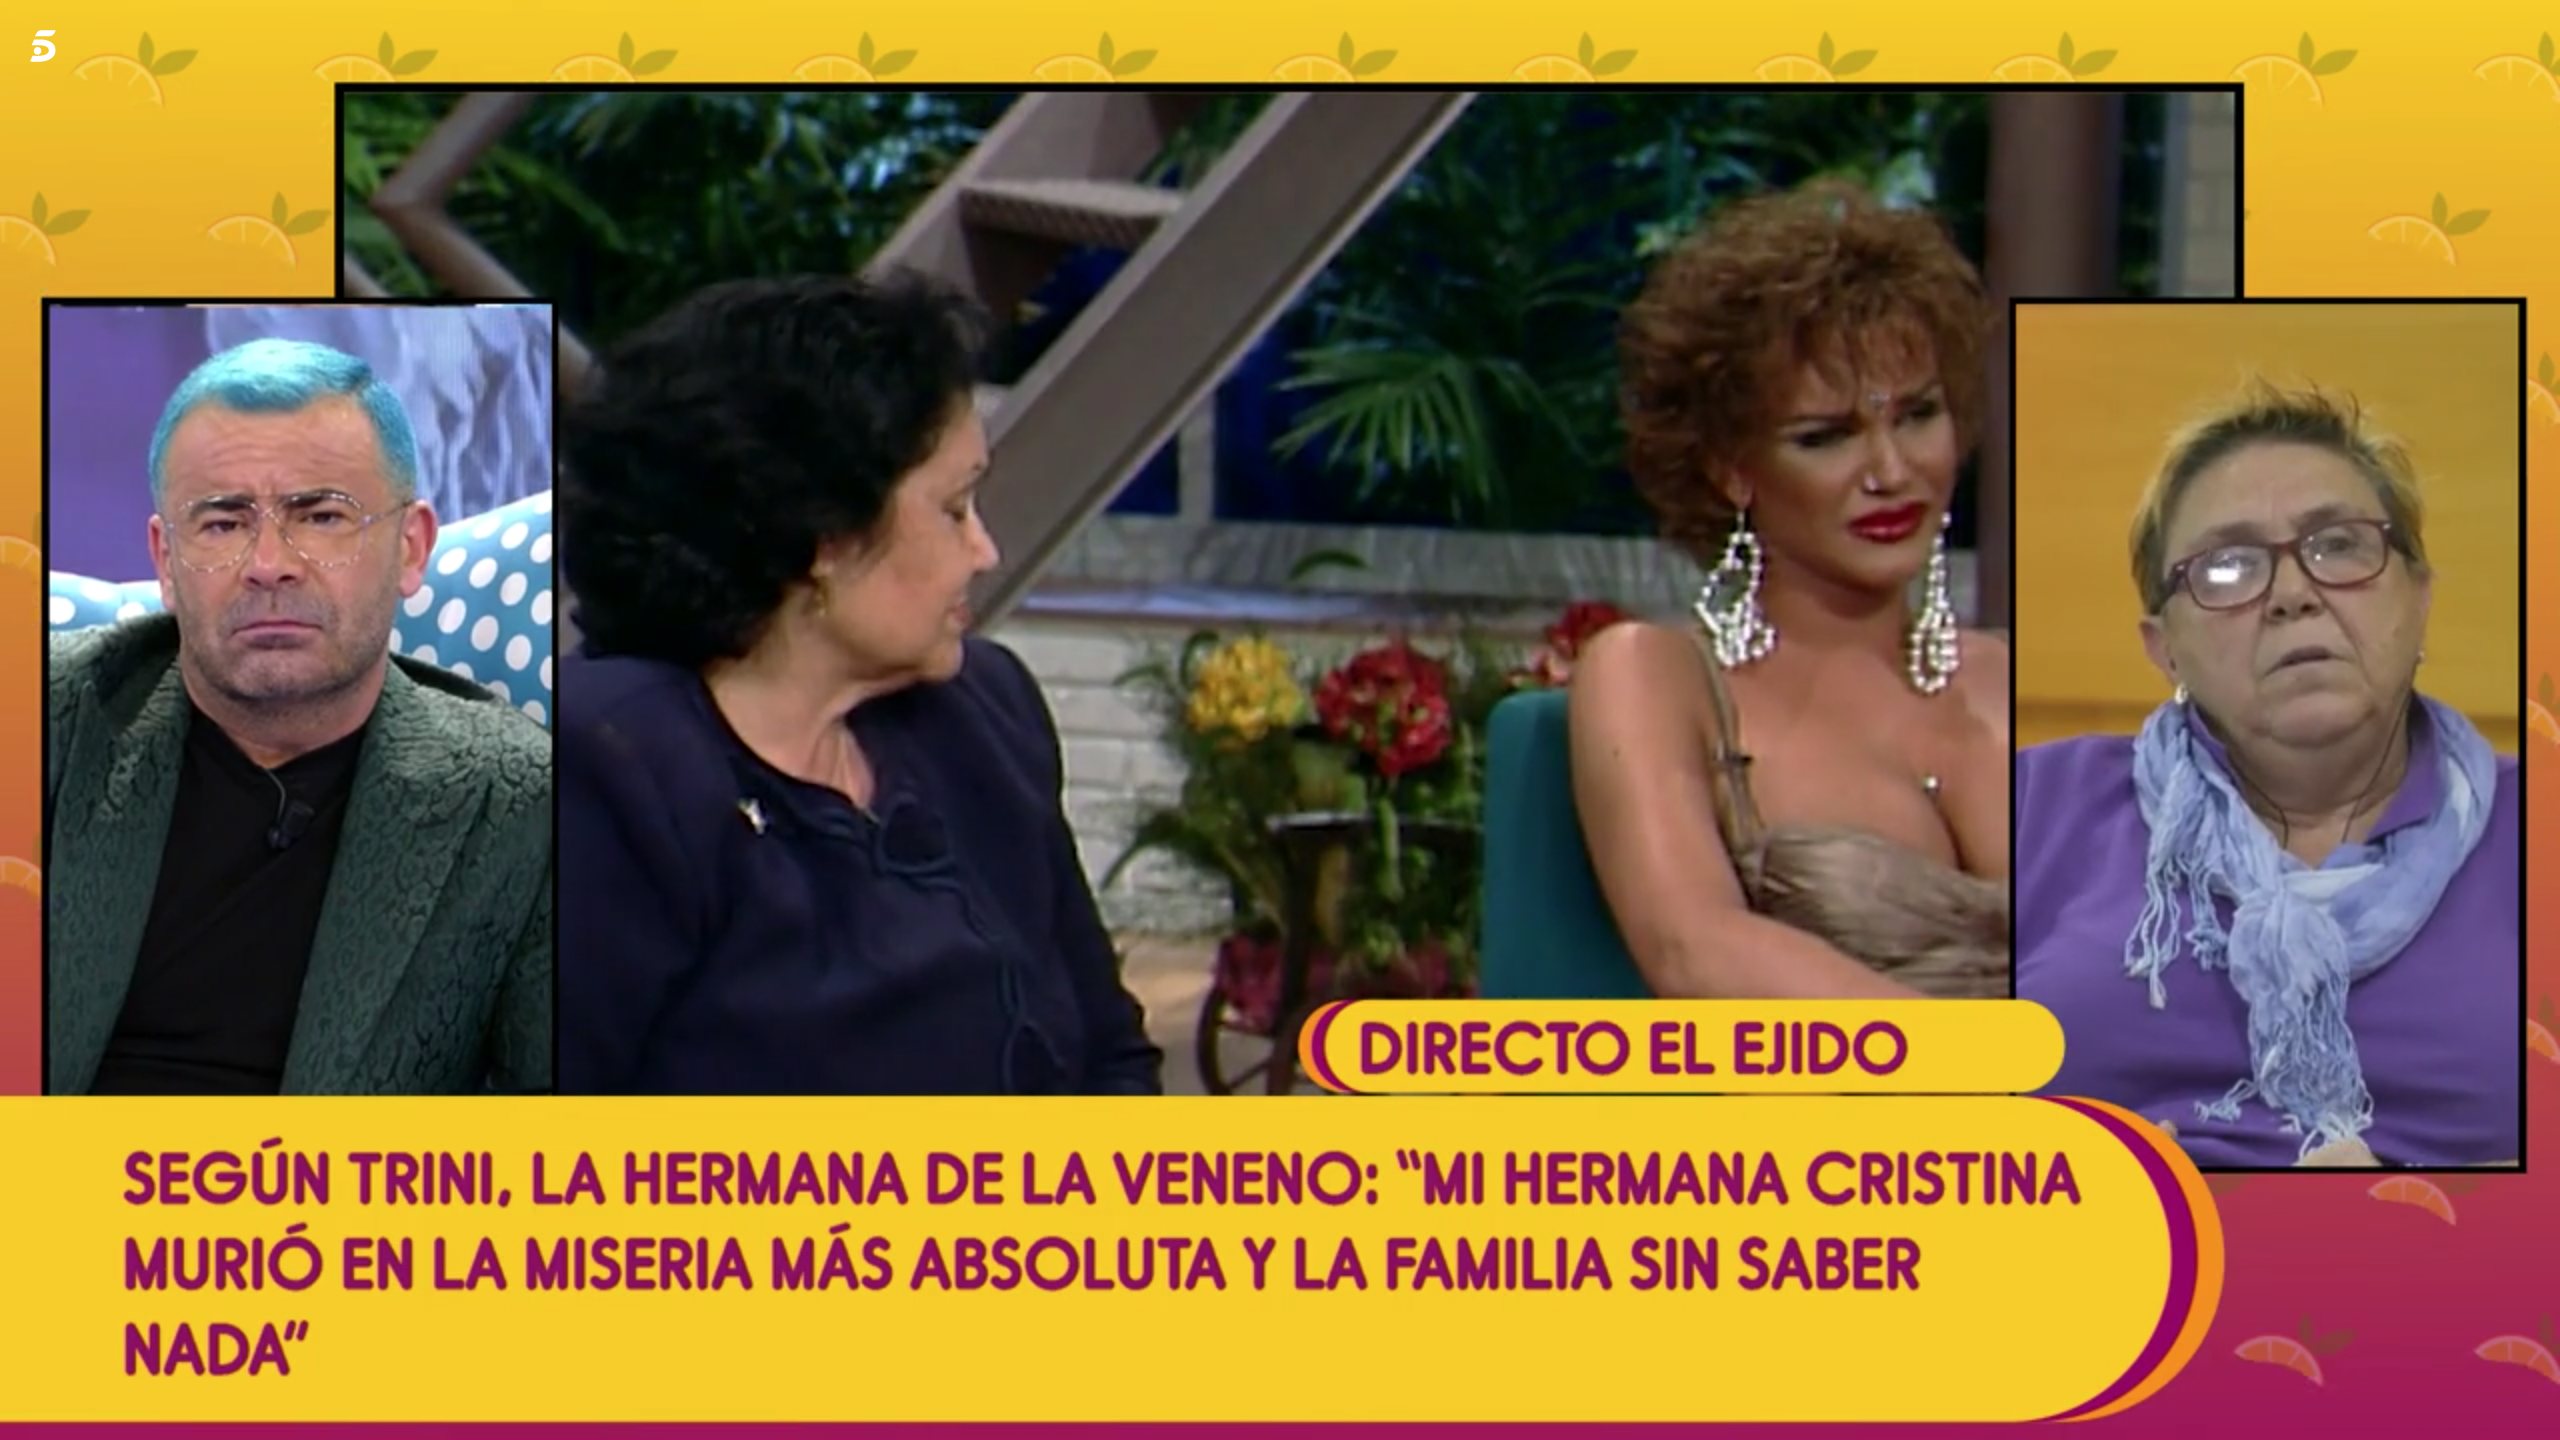 Trini asegura que La Veneno que se veía en la televisión era un papel | Foto: Telecinco.es